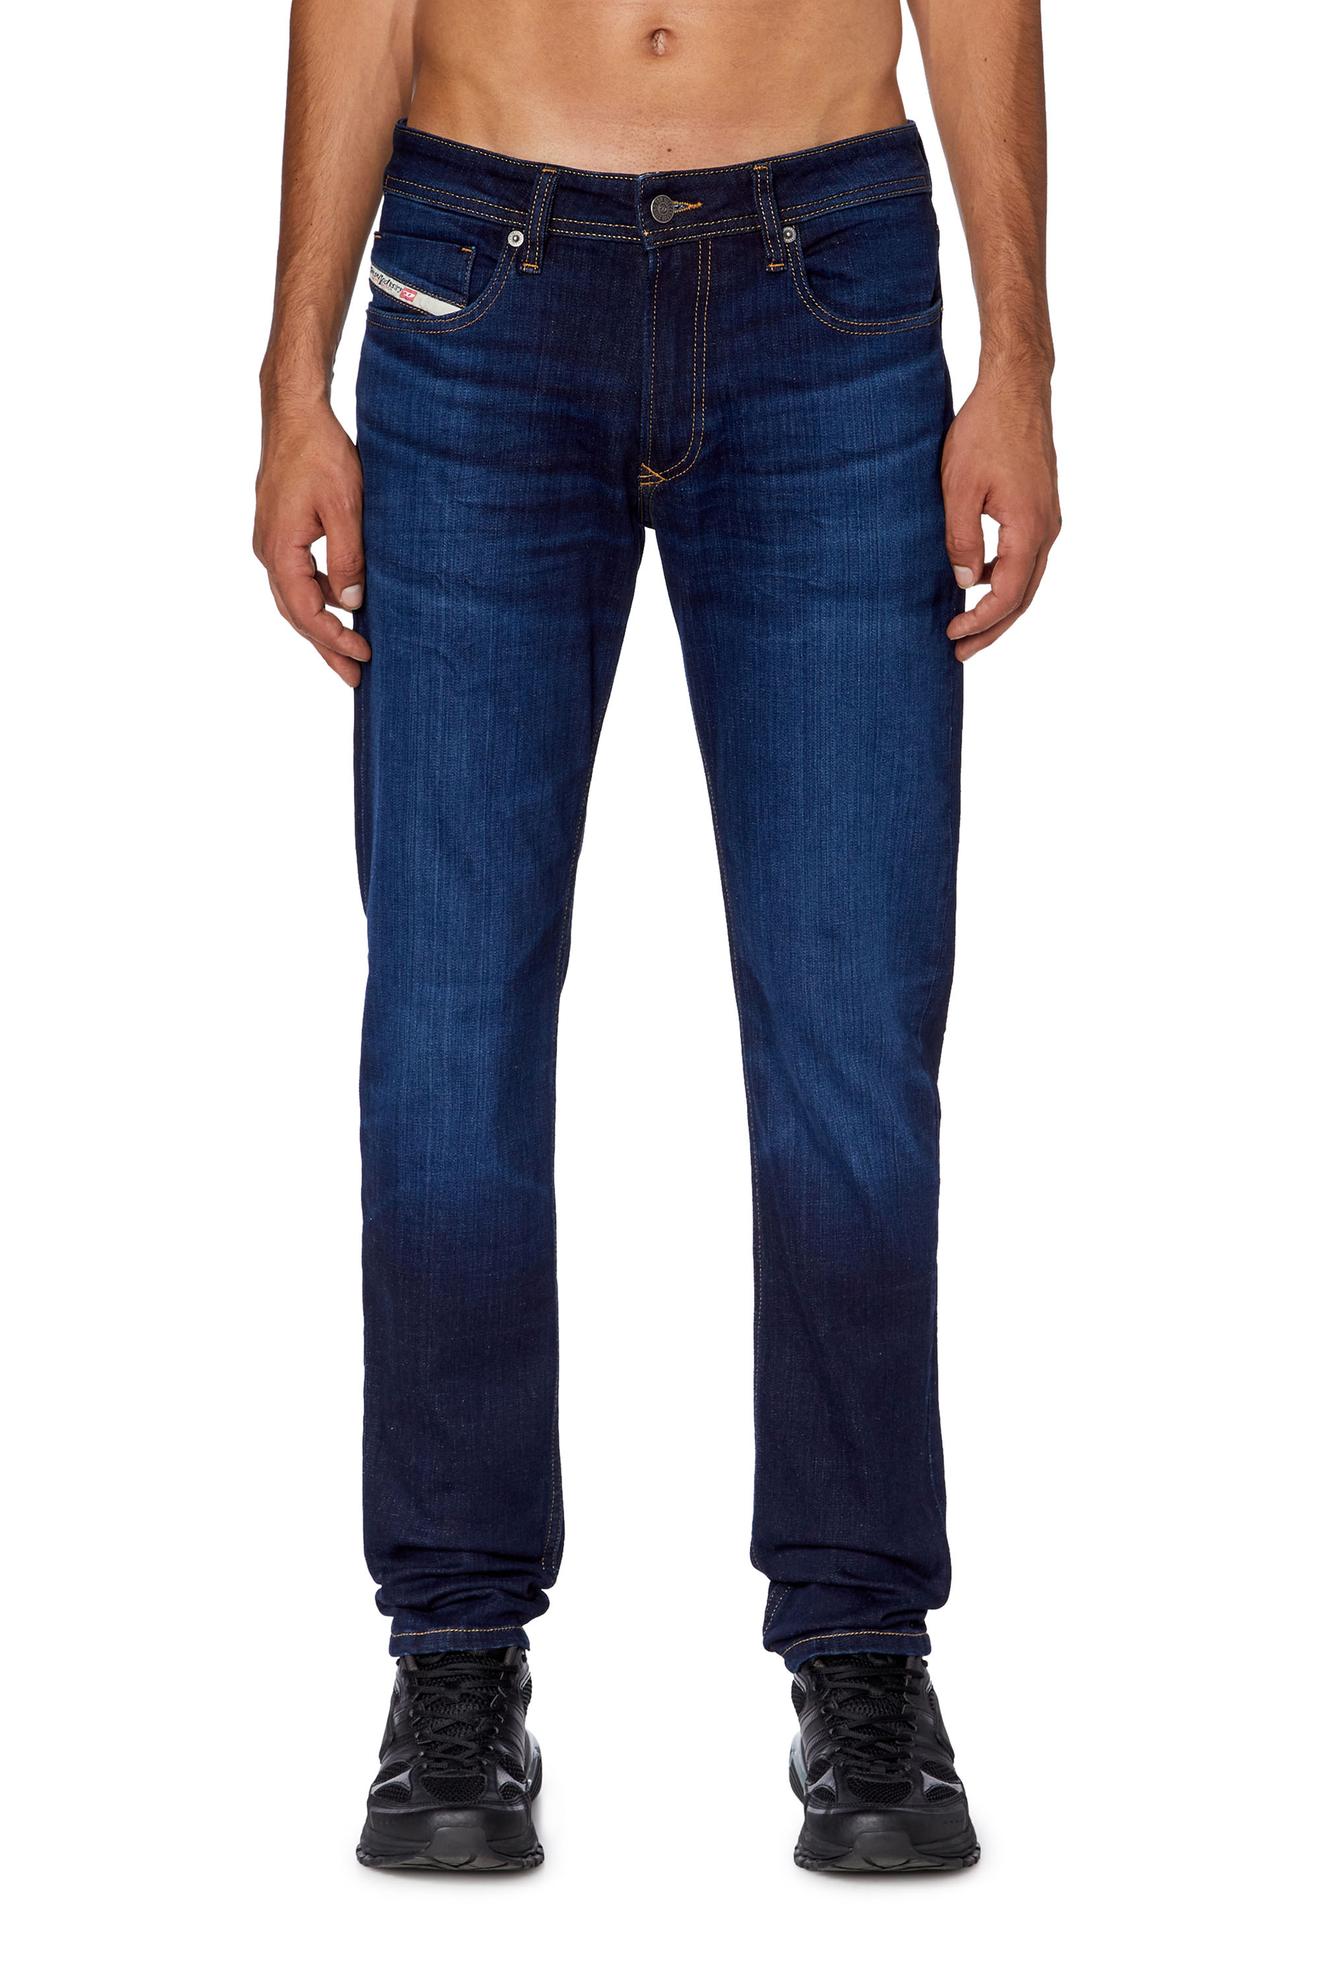 Skinny Jeans - 1979 Sleenker offers at $174 in Diesel